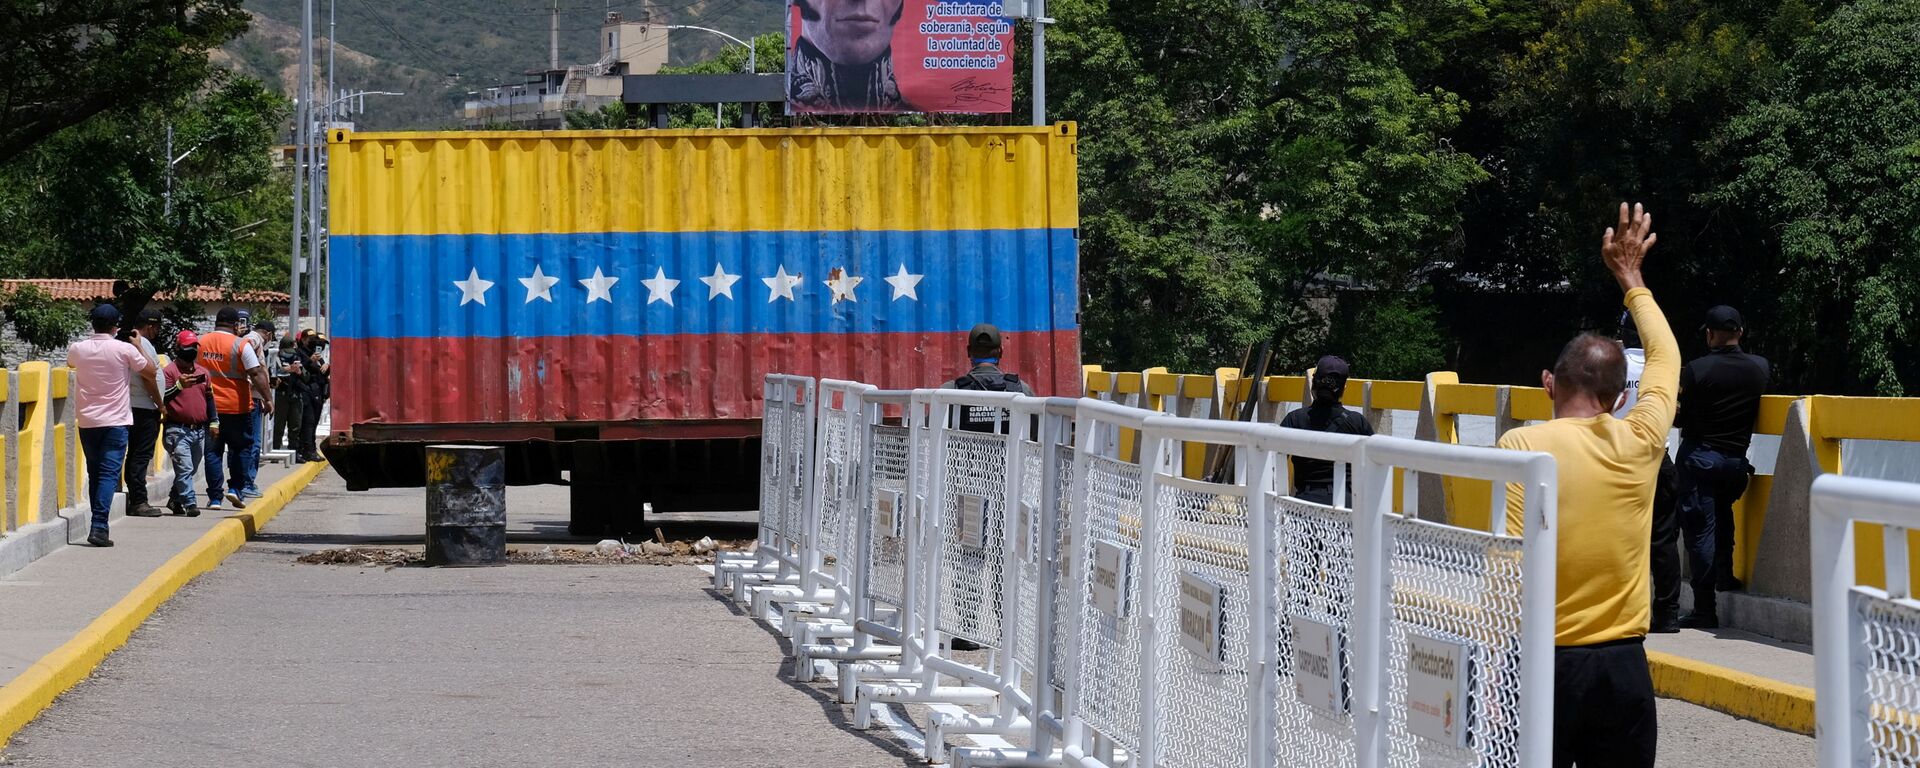 Перенос контейнера на открывшейся границе между Венесуэлой и Колумбией  - Sputnik Mundo, 1920, 05.10.2021